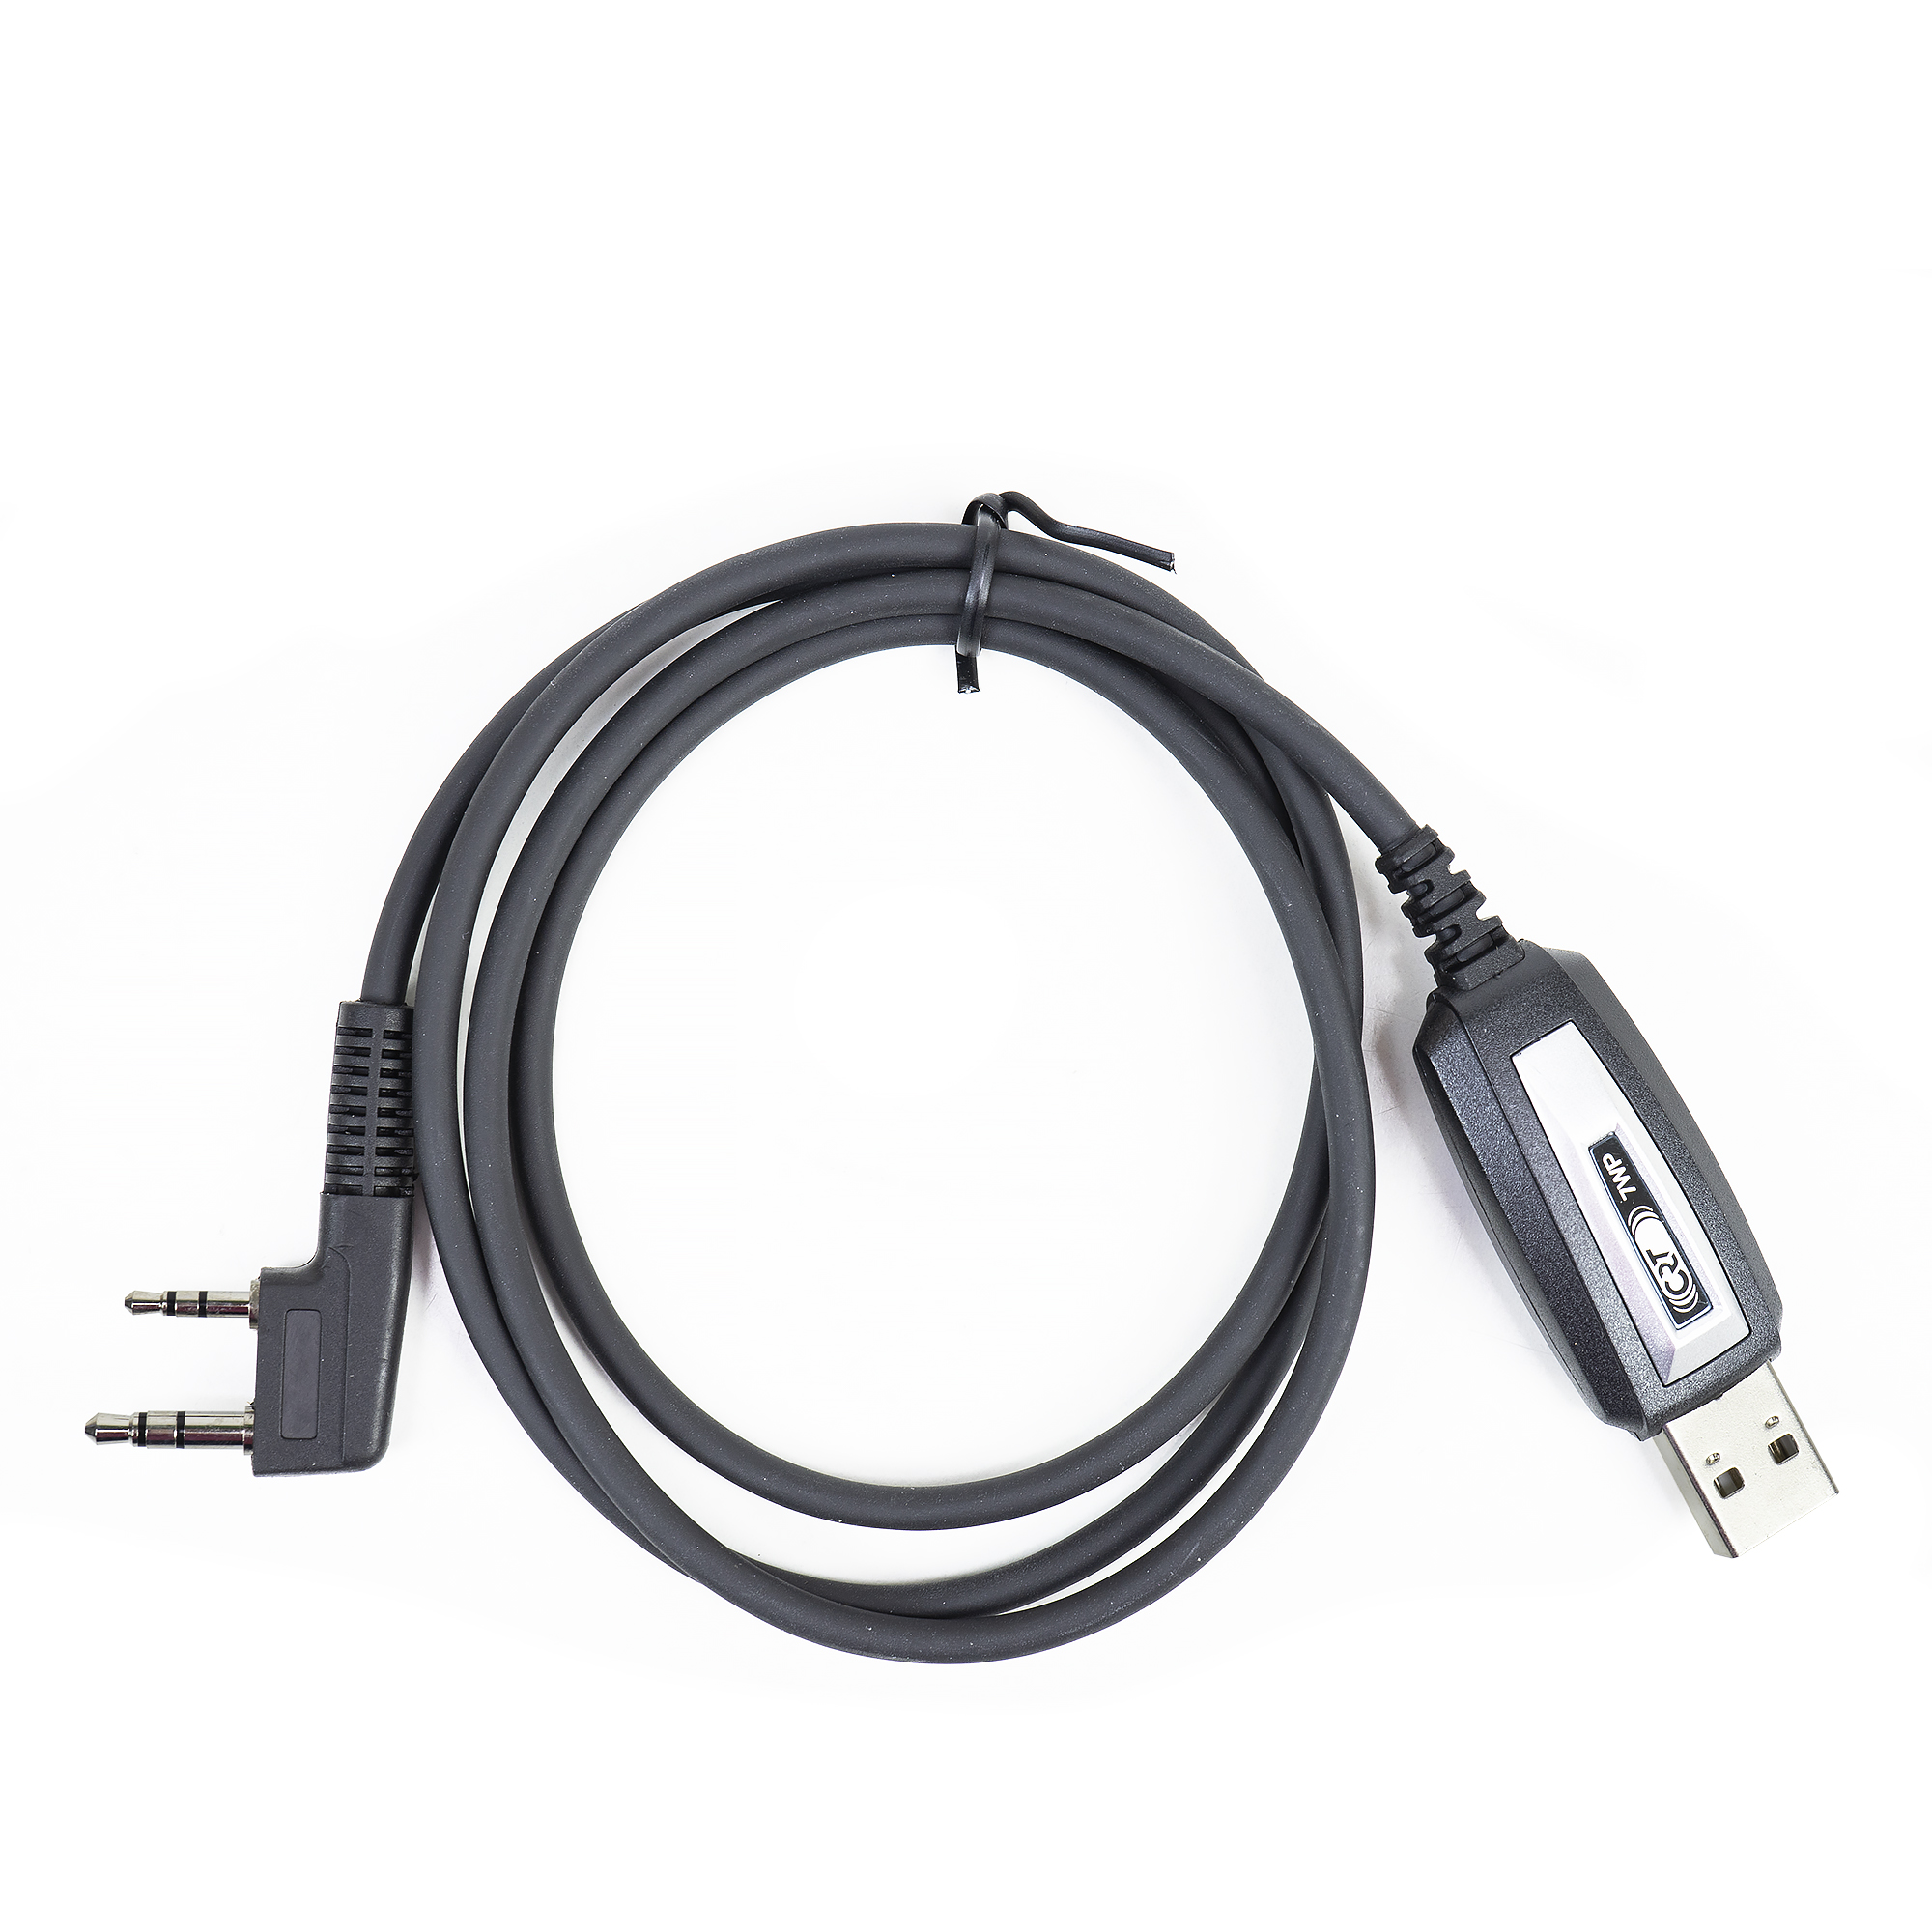 Cablu de programare pentru statii radio portabile CRT cu mufa Kenwood image1